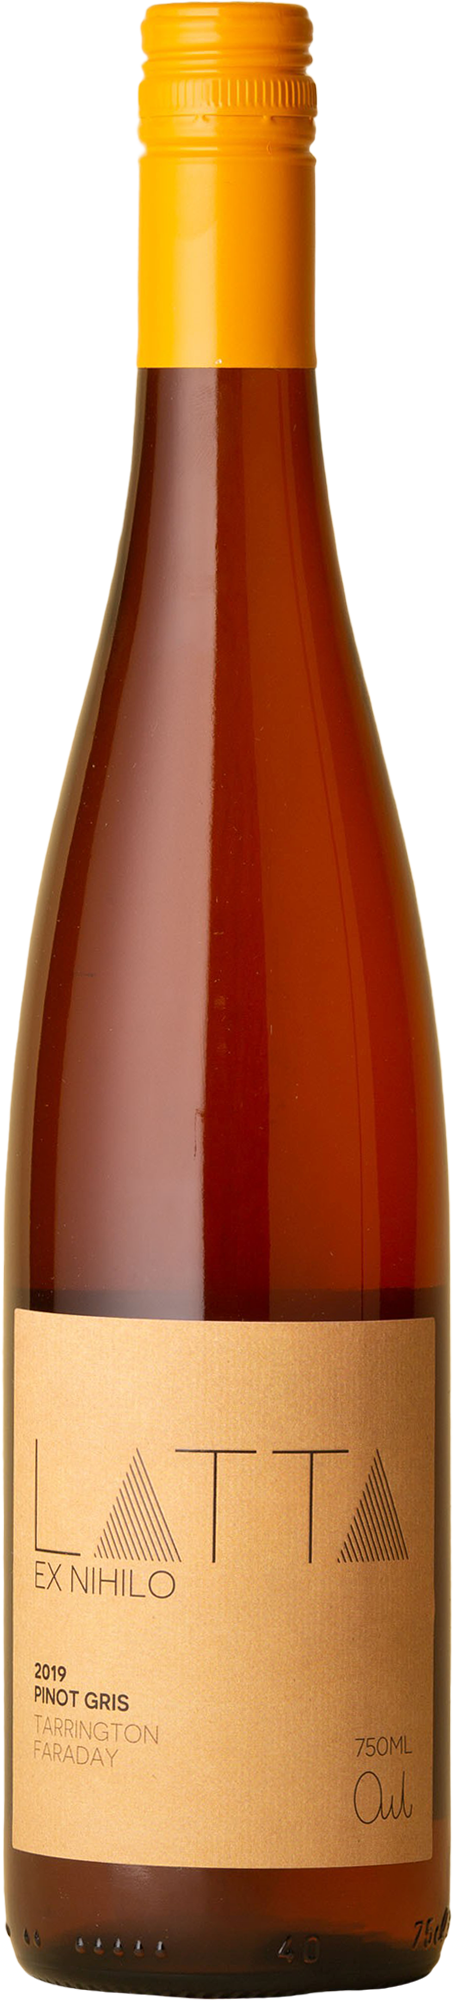 Latta - Ex Nihilo Pinot Gris 2019 Orange Wine